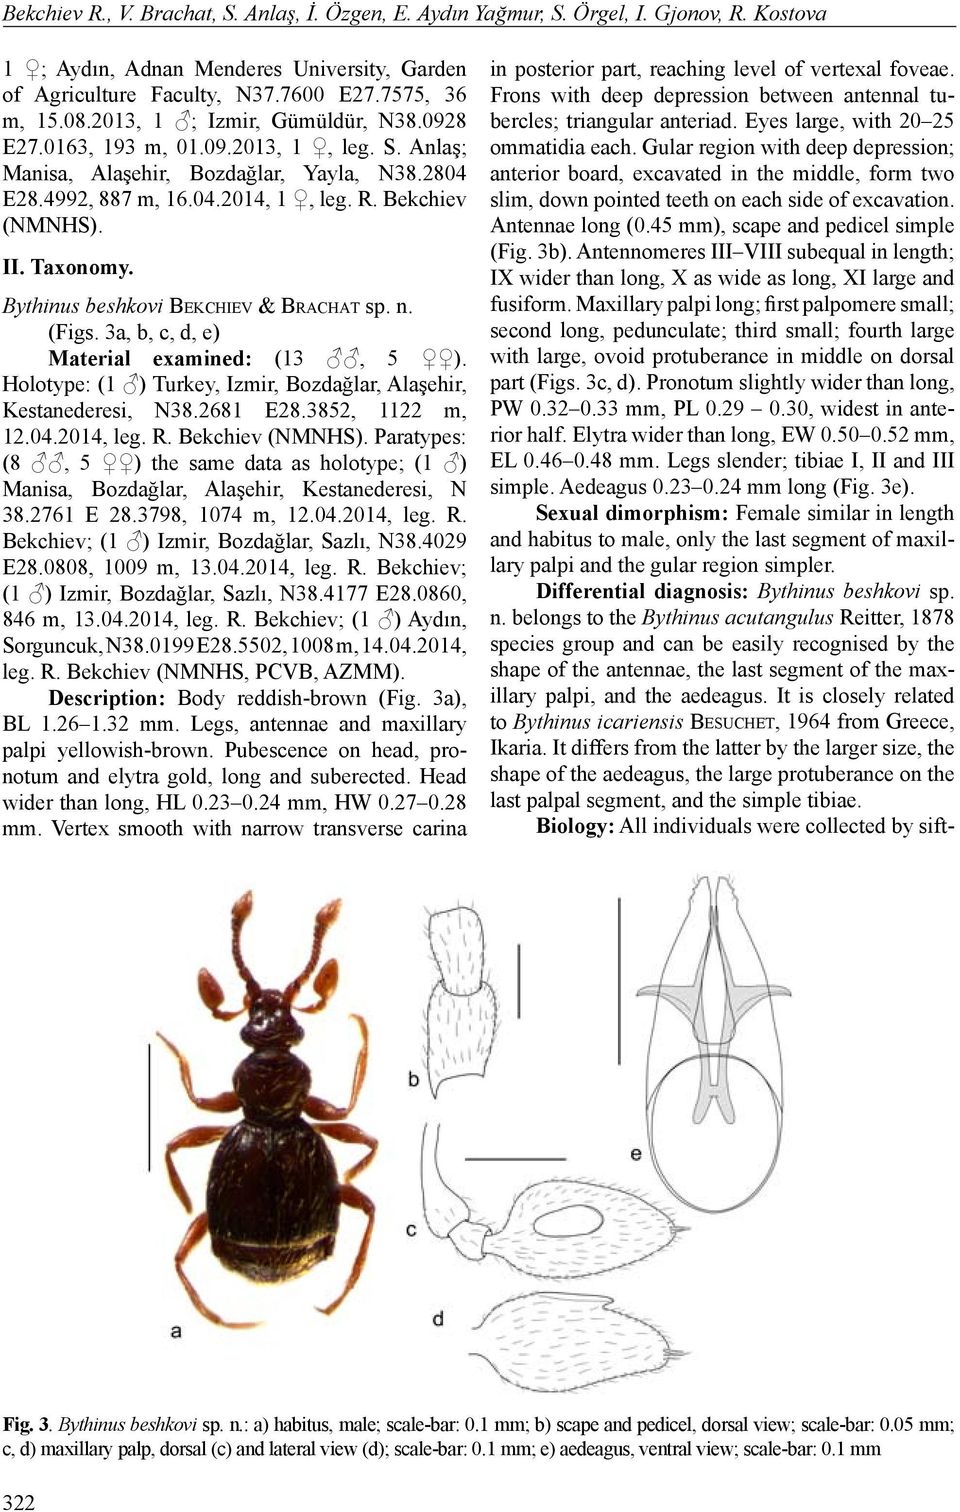 Bythinus beshkovi Be k c h i e v & Br a c h a t sp. n. (Figs. 3a, b, c, d, e) Material examined: (13, 5 ). Holotype: (1 ) Turkey, Izmir, Bozdağlar, Alaşehir, Kestanederesi, N38.2681 E28.